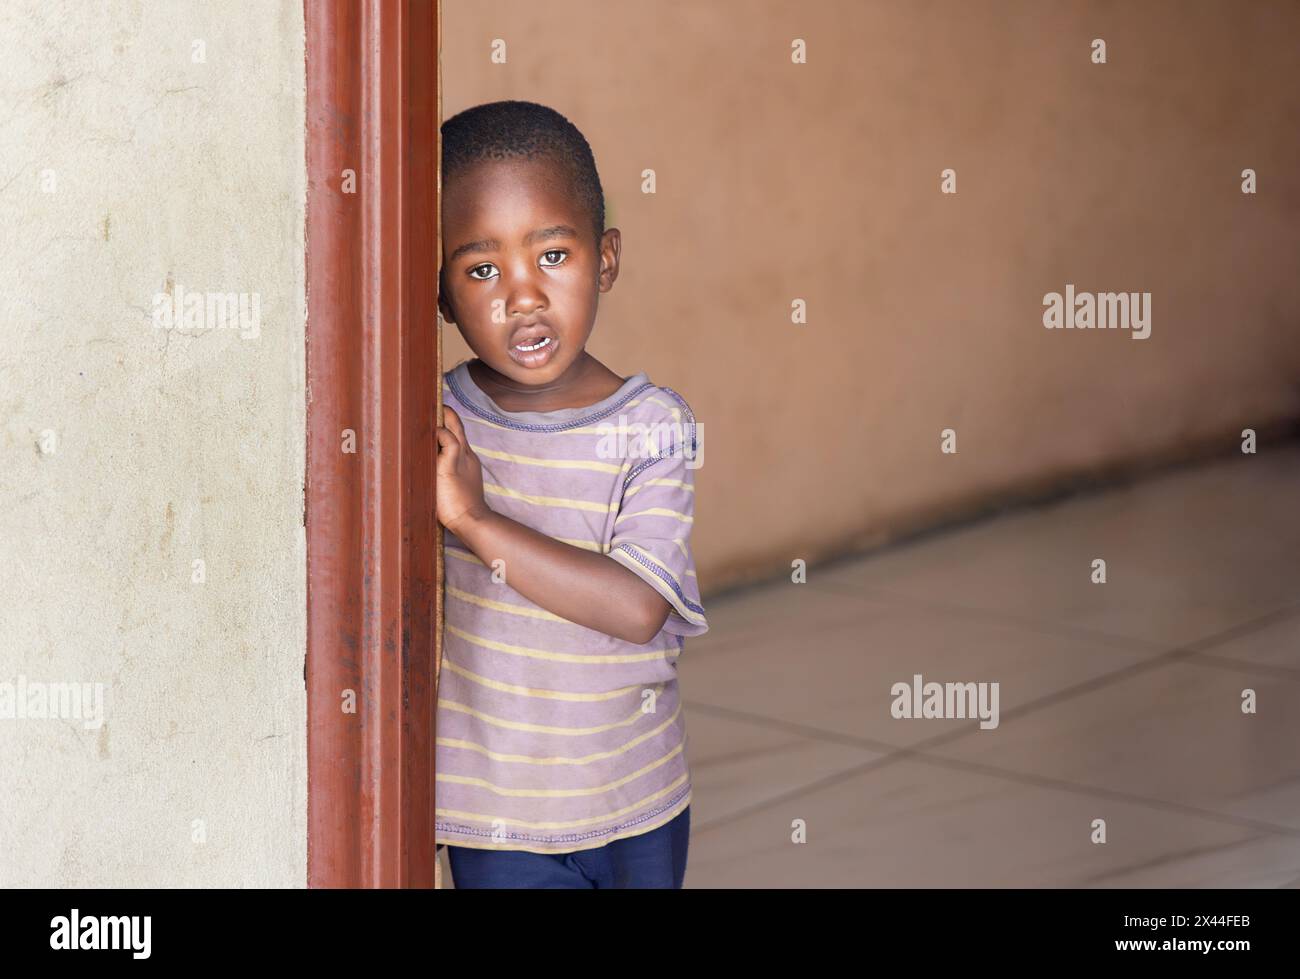 village africain , enfant orphelin célibataire solitaire dans une maison vide, debout attendant à la porte, ong organisation caritative organisant des parents d'accueil de Banque D'Images